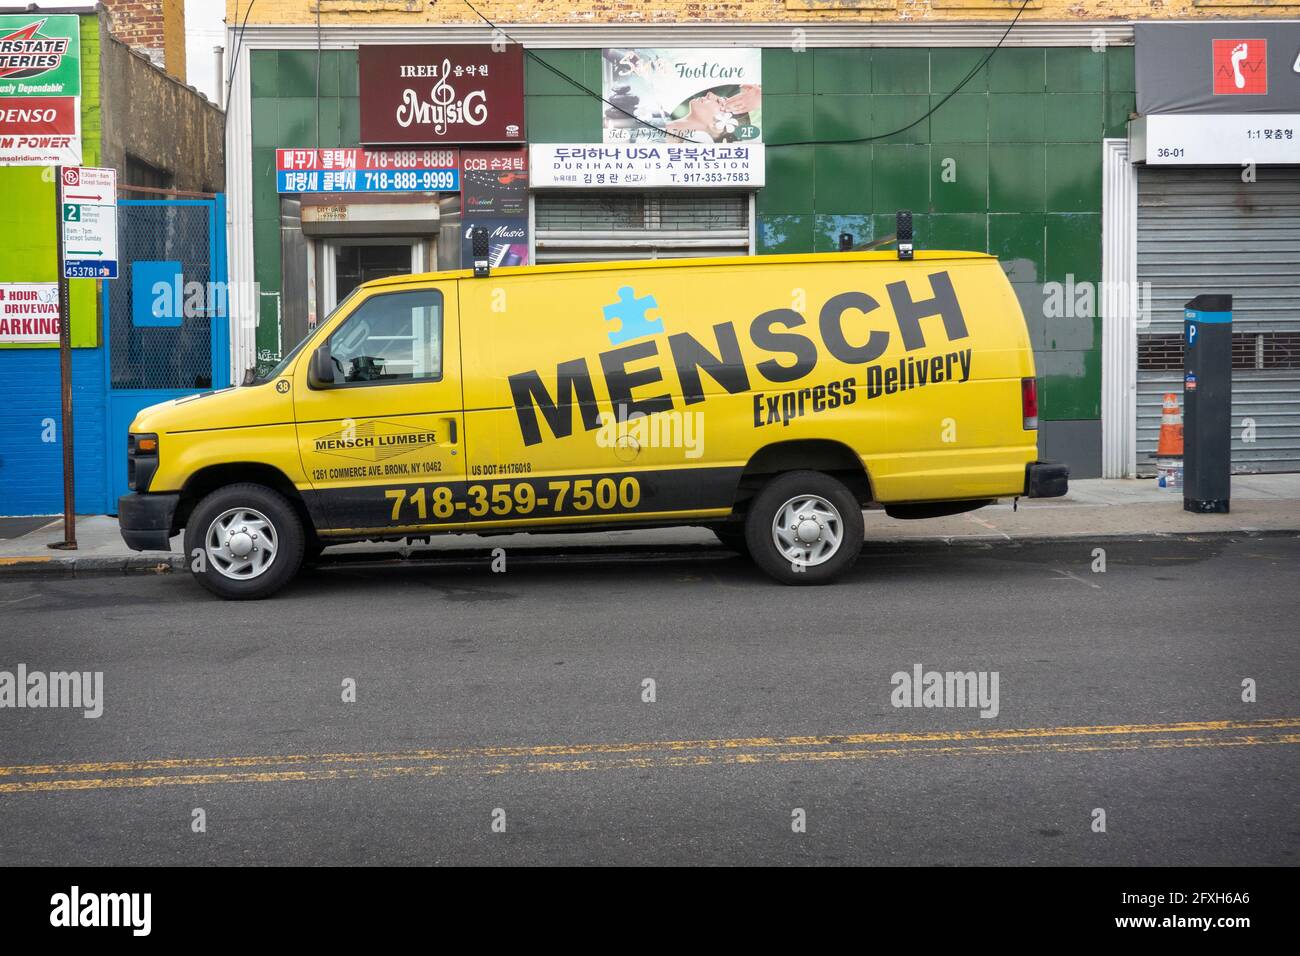 Ein Lieferwagen von Mensch Lumber in der Bronx.Mensch ist ein jiddisches Wort für einen anständigen Menschen von Integrität. Geparkt in Flushing, Queens, New York. Stockfoto